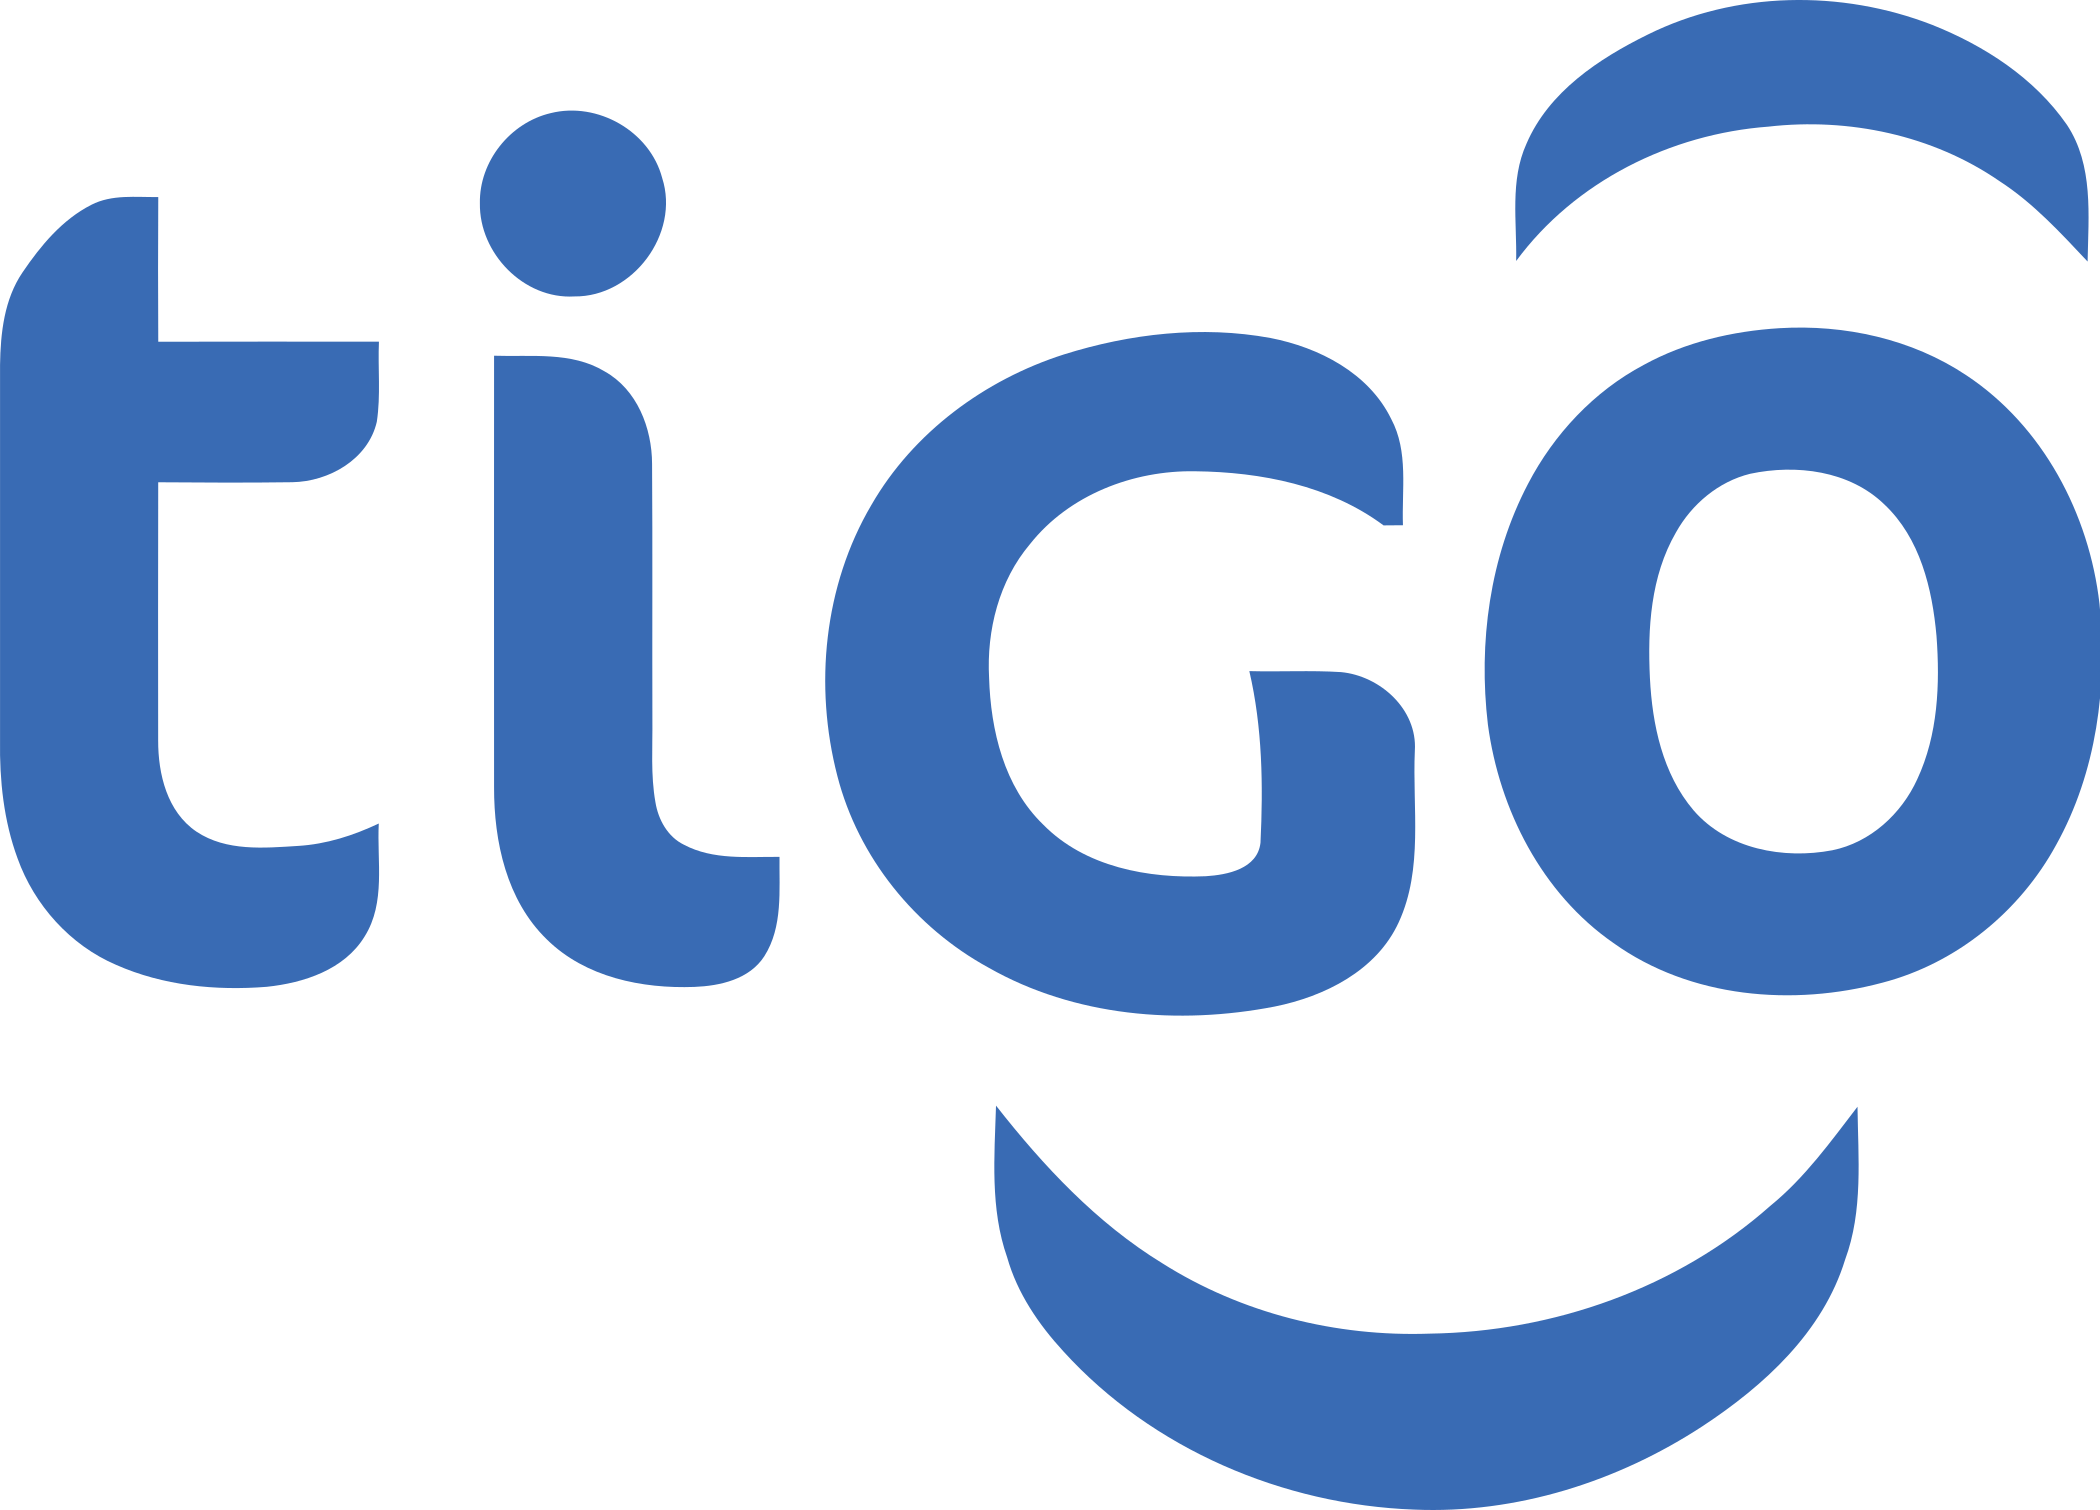 tigo logo 2 - Tigo Logo